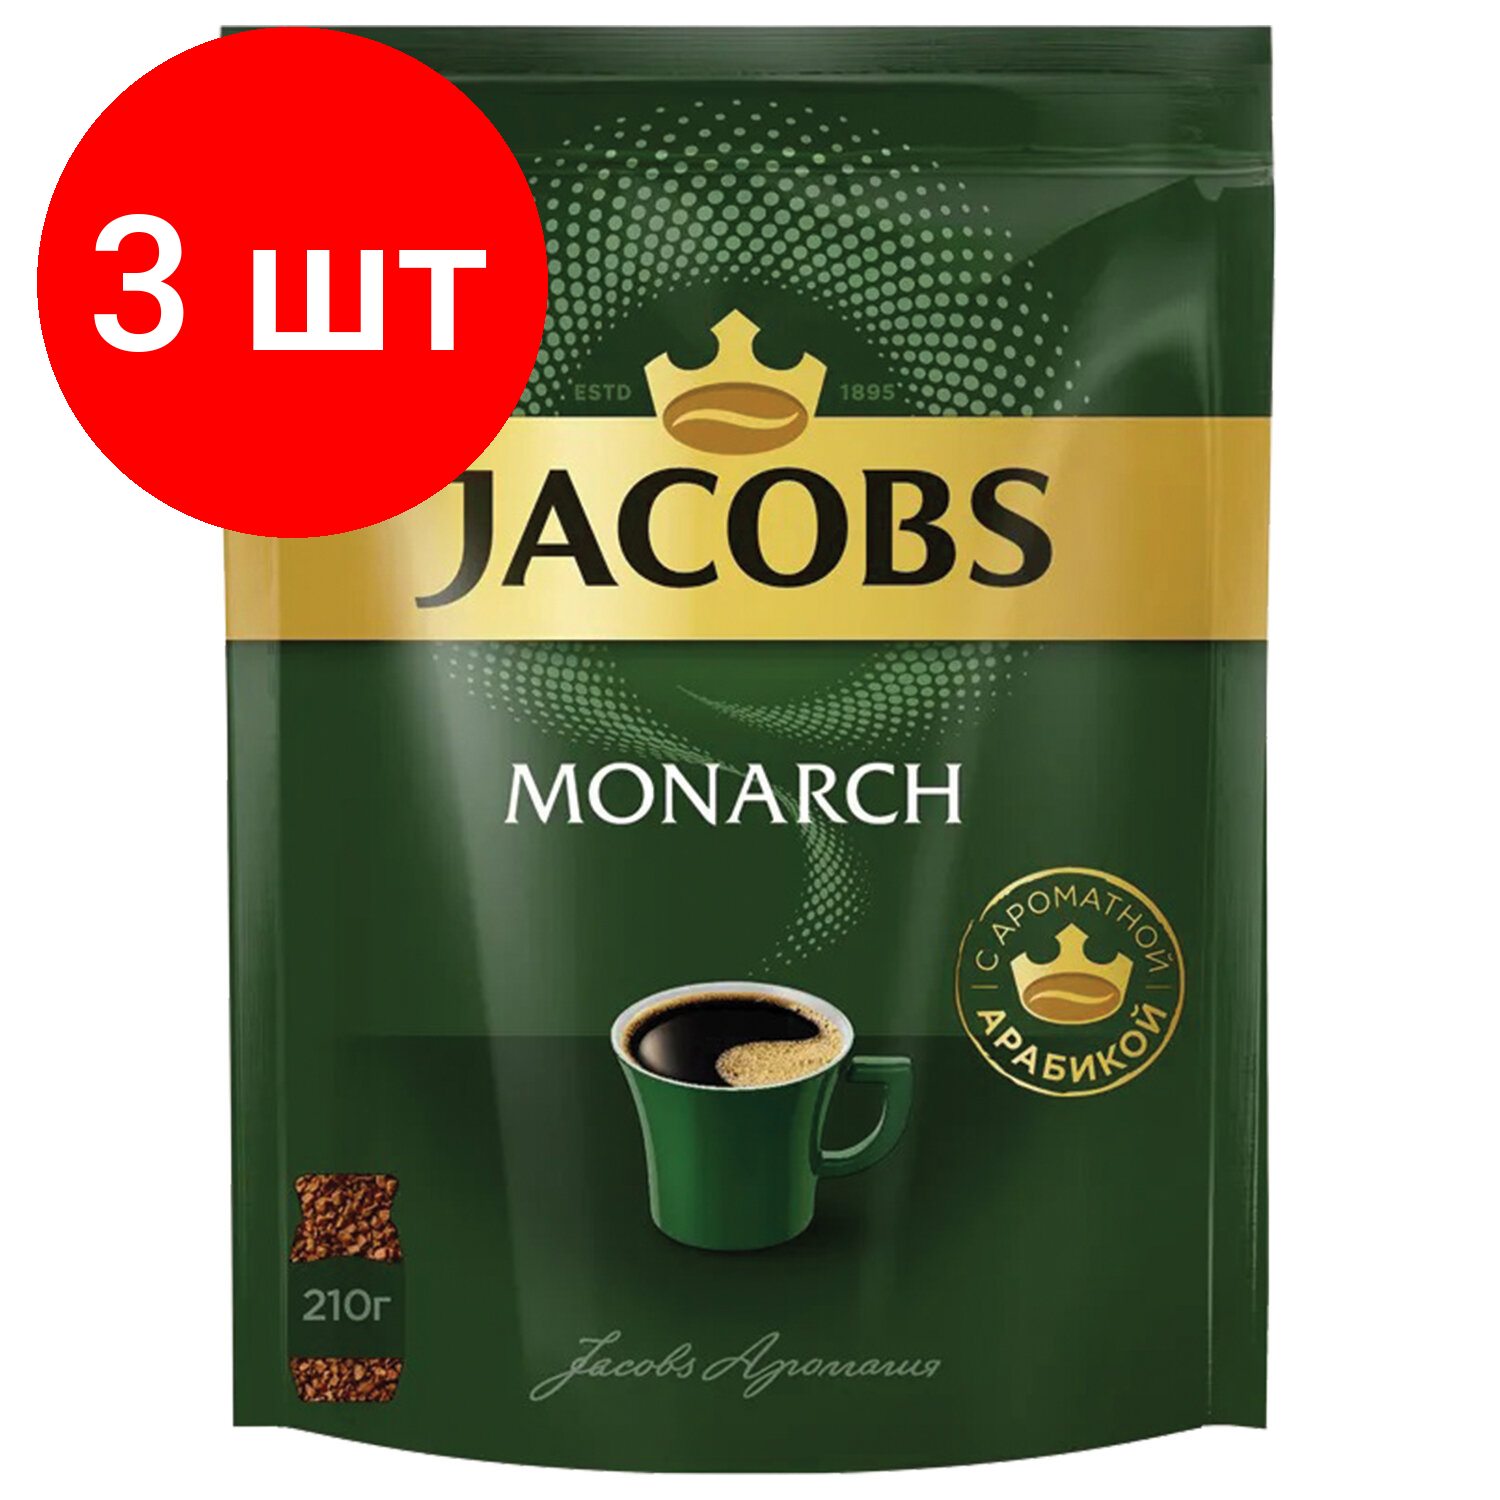 Комплект 3 шт, Кофе растворимый JACOBS Monarch, сублимированный, 210г, мягкая упаковка, ш/к 70411, 8052808